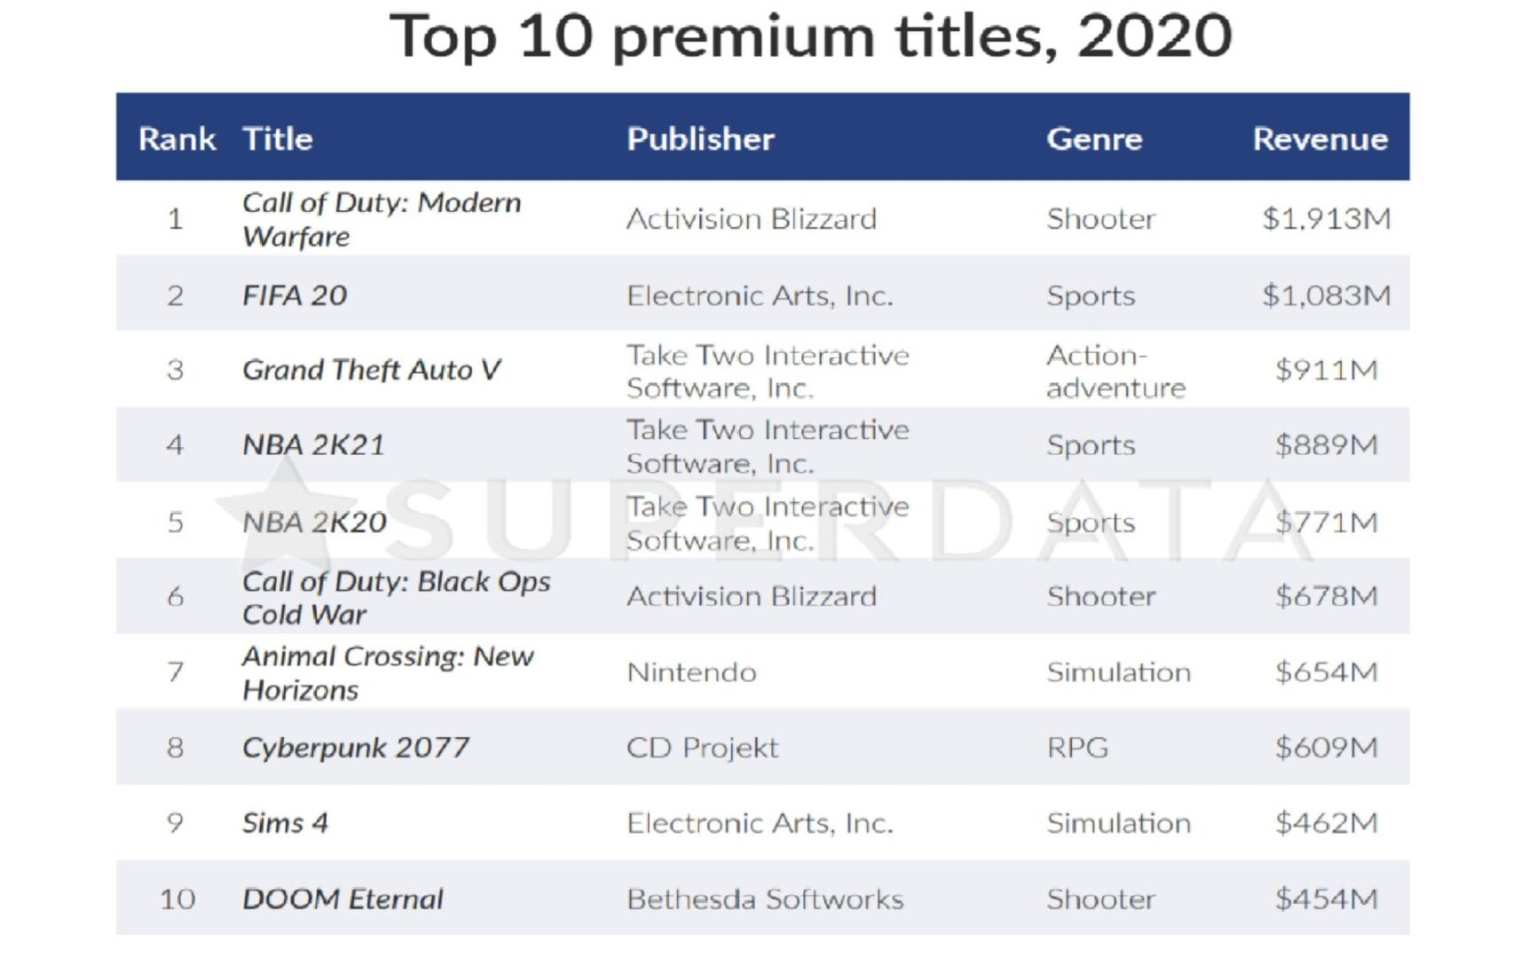 فهرست ۱۰ بازی غیررایگان و پردرآمد سال ۲۰۲۰ به گزارش Superdata